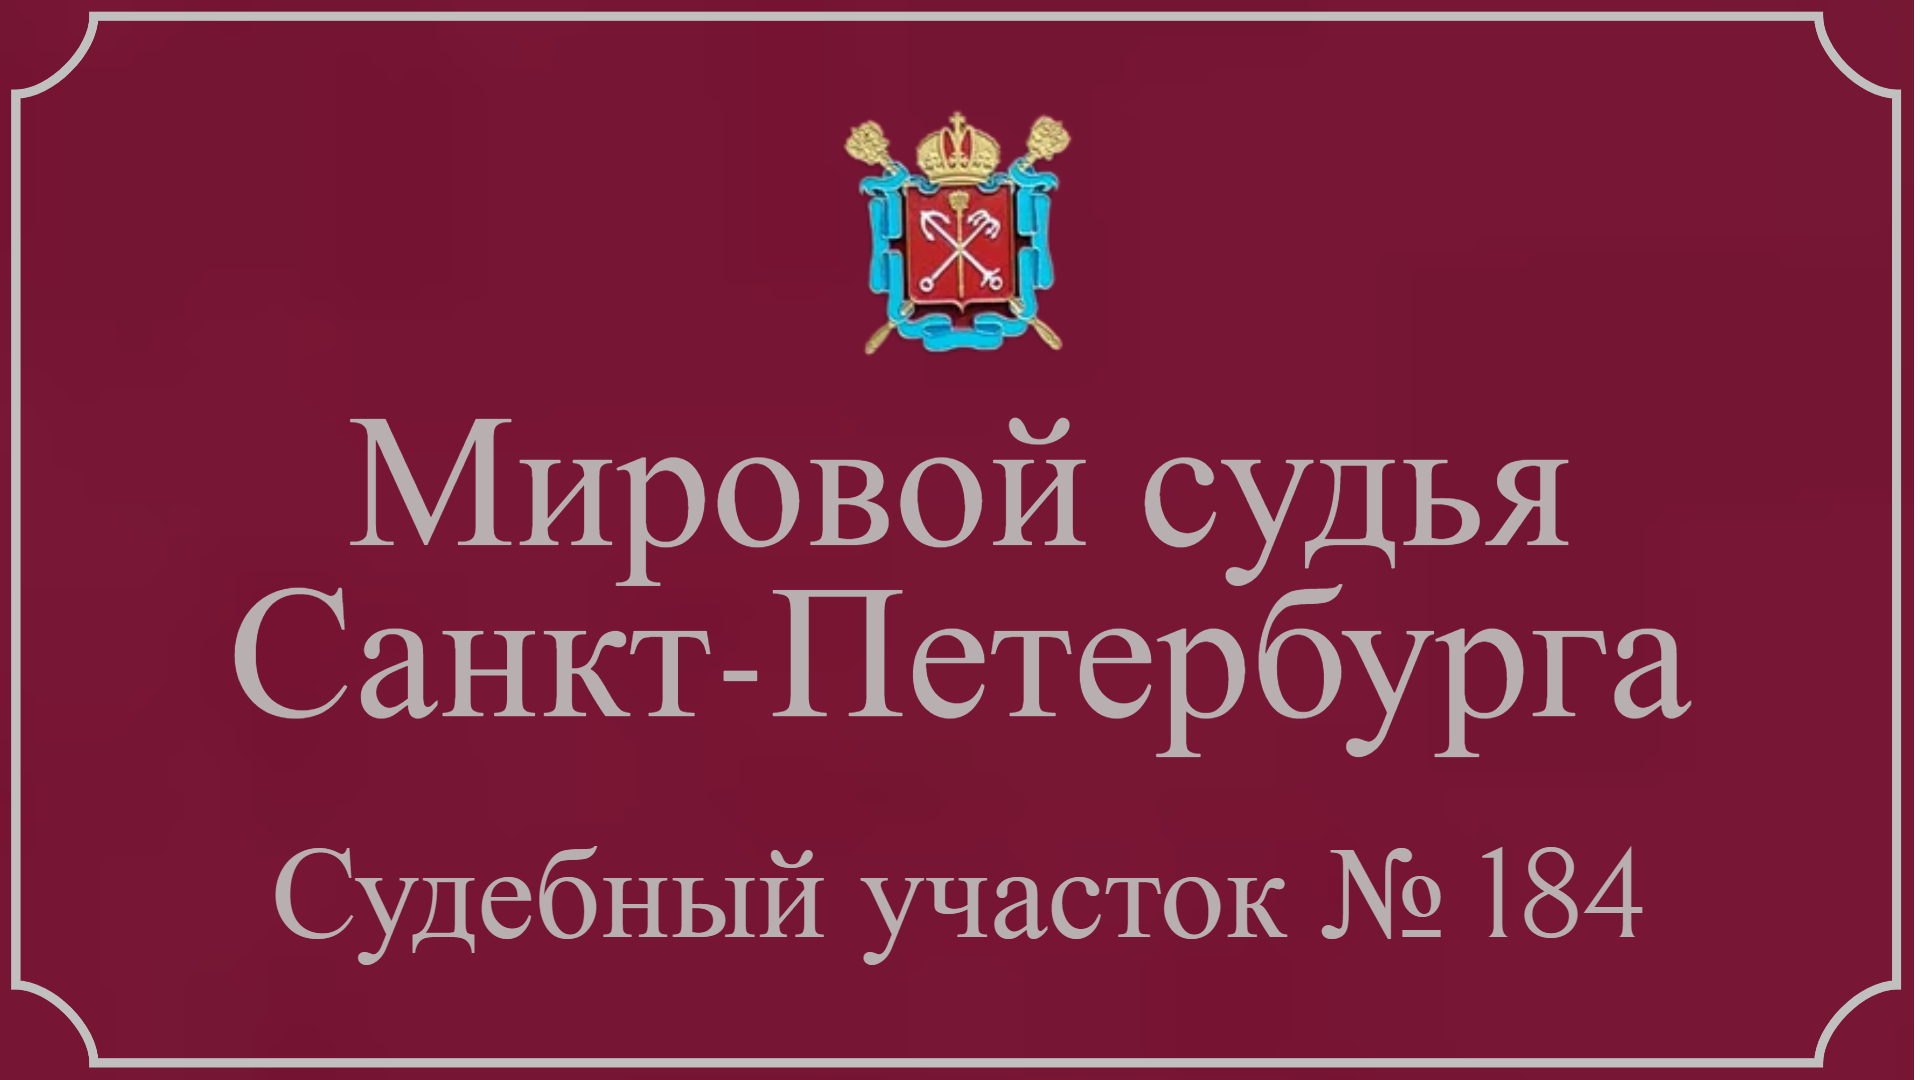 Информация по 184 судебному участку в Санкт-Петербурге.